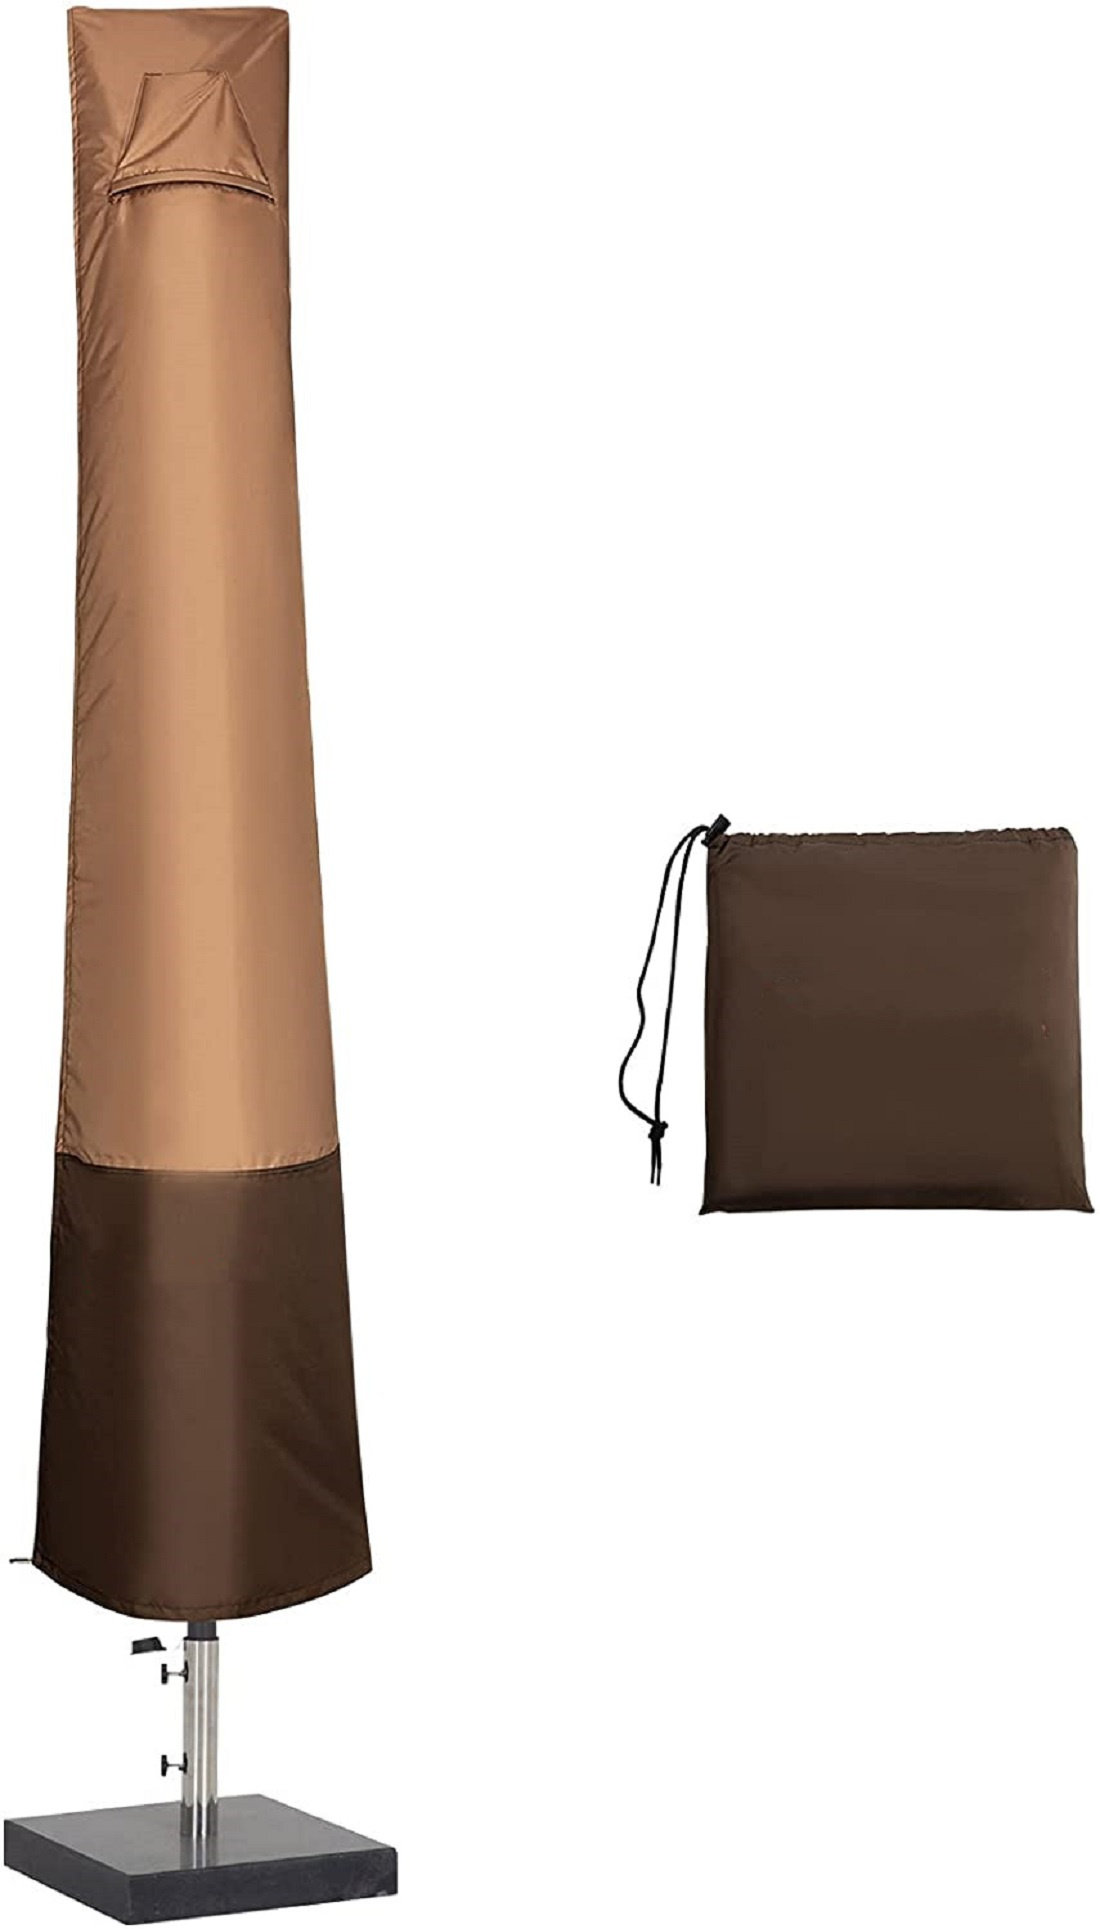 Okpow Parasole Copertura 600D Oxford Tessuto Impermeabile Patio Umbrella copre con zip 